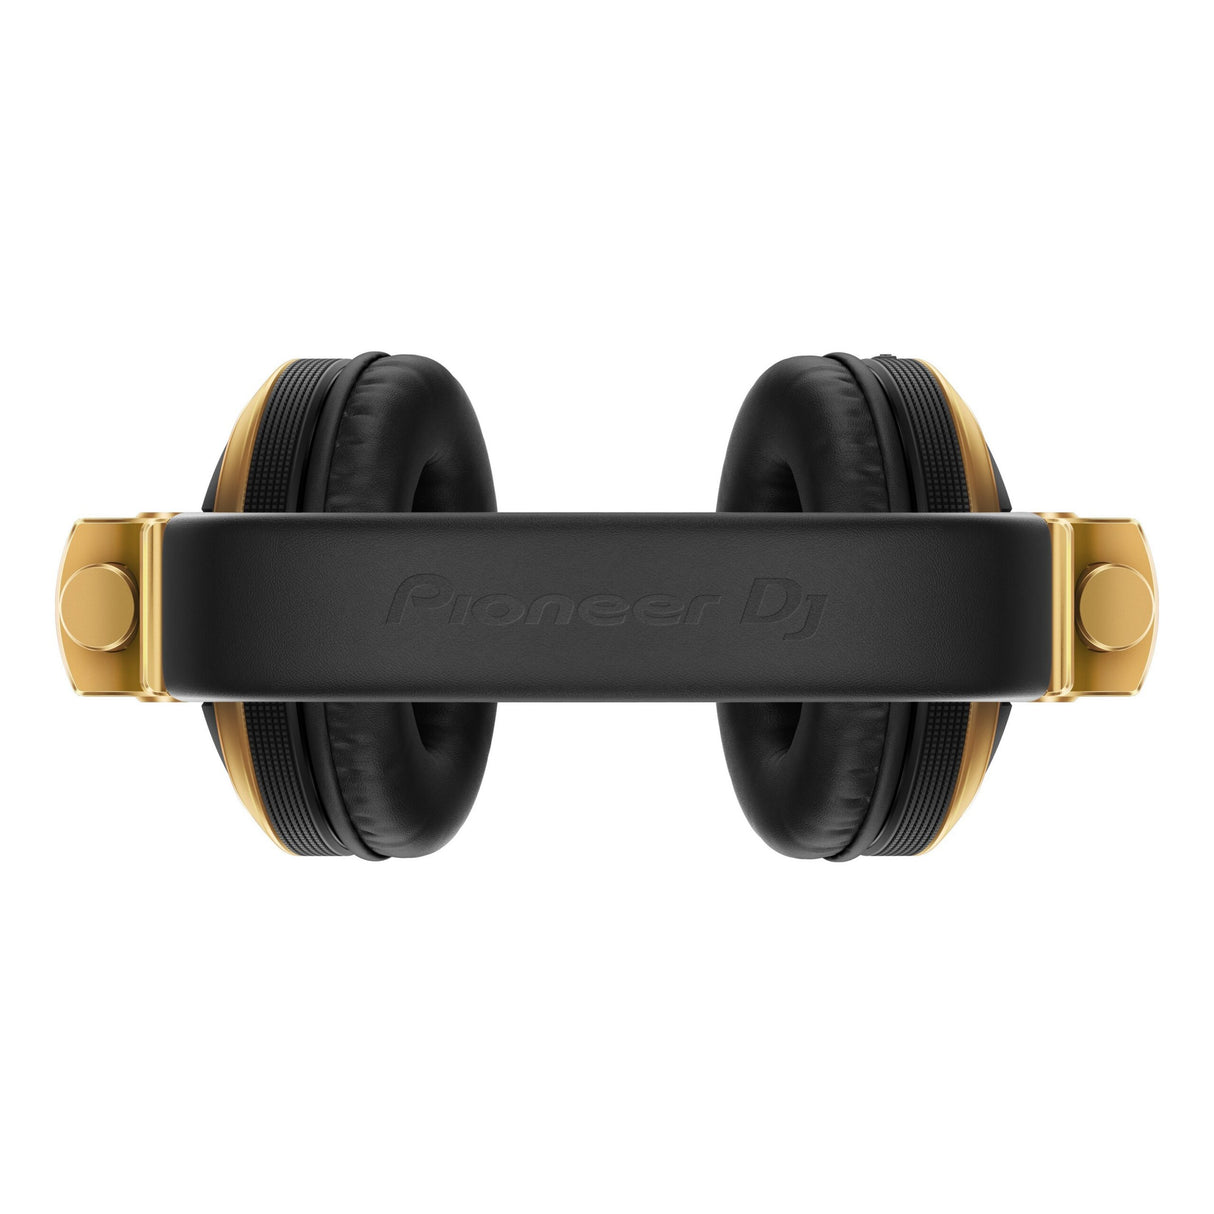 Pioneer DJ HDJ-X5BT-N Over-Ear Bluetooth DJ Headphone, Gold